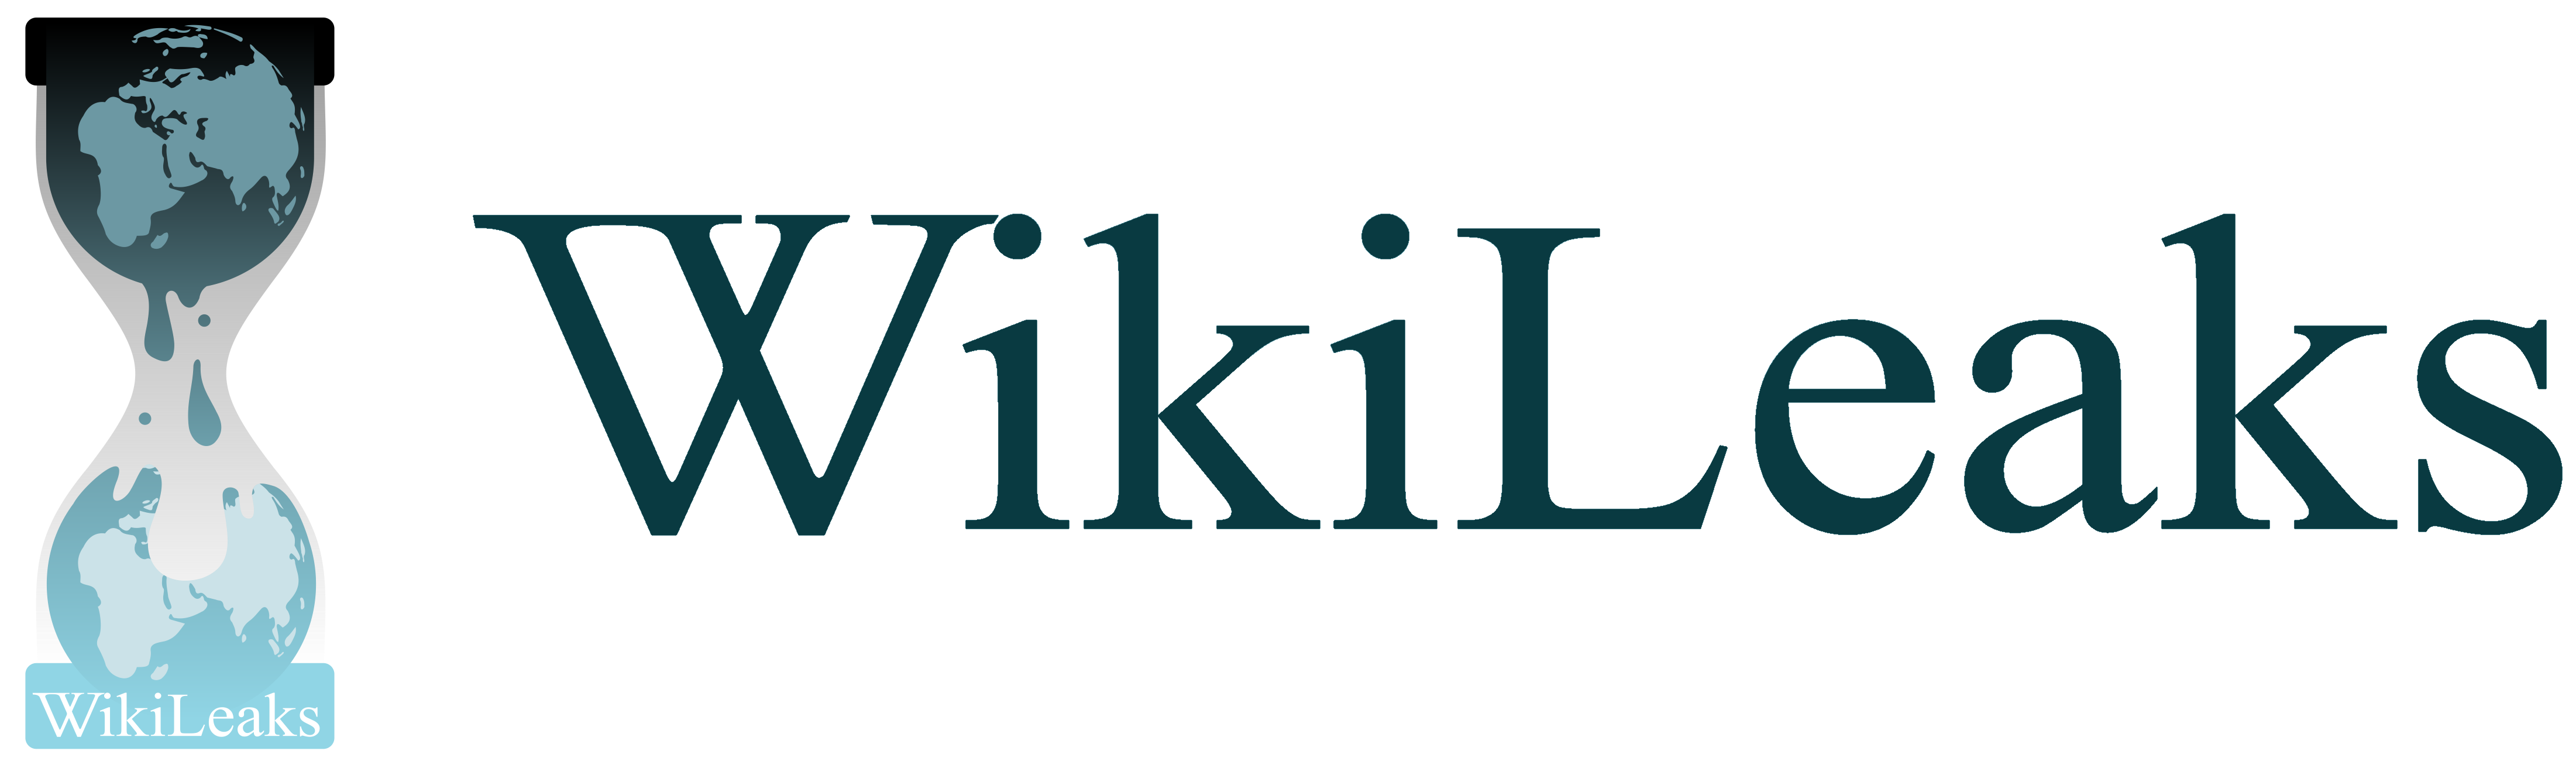 WikiLeaks logo, logotype